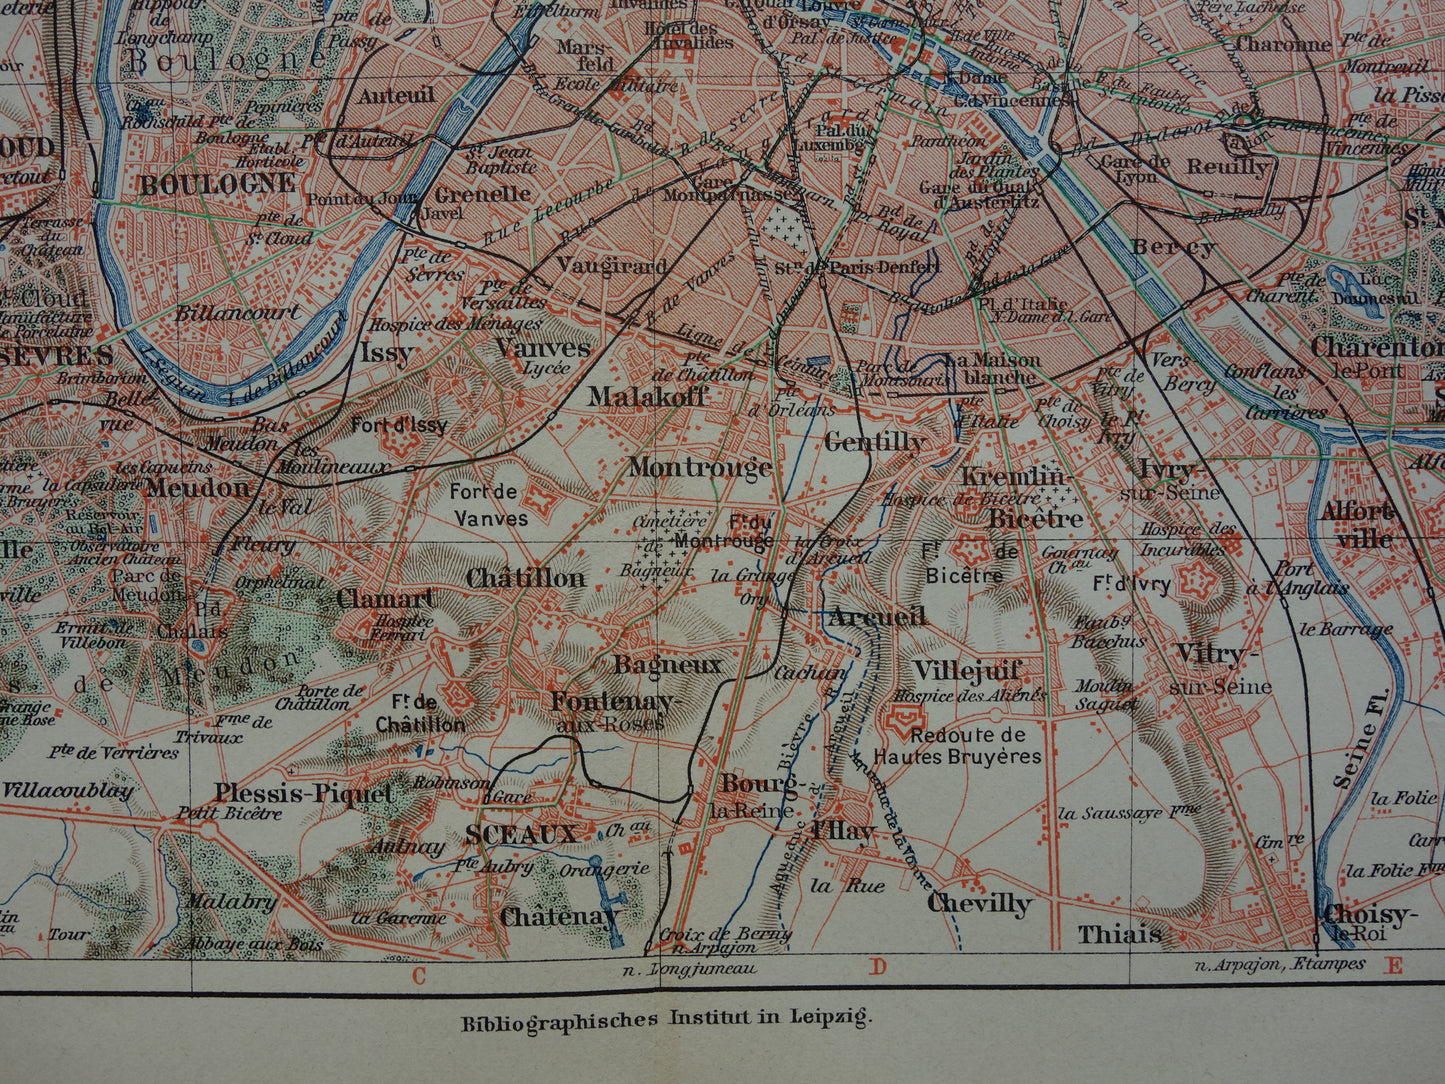 PARIJS oude kaart van Parijs en omgeving 1913 originele antieke Duitse landkaart Versailles Rambouillet